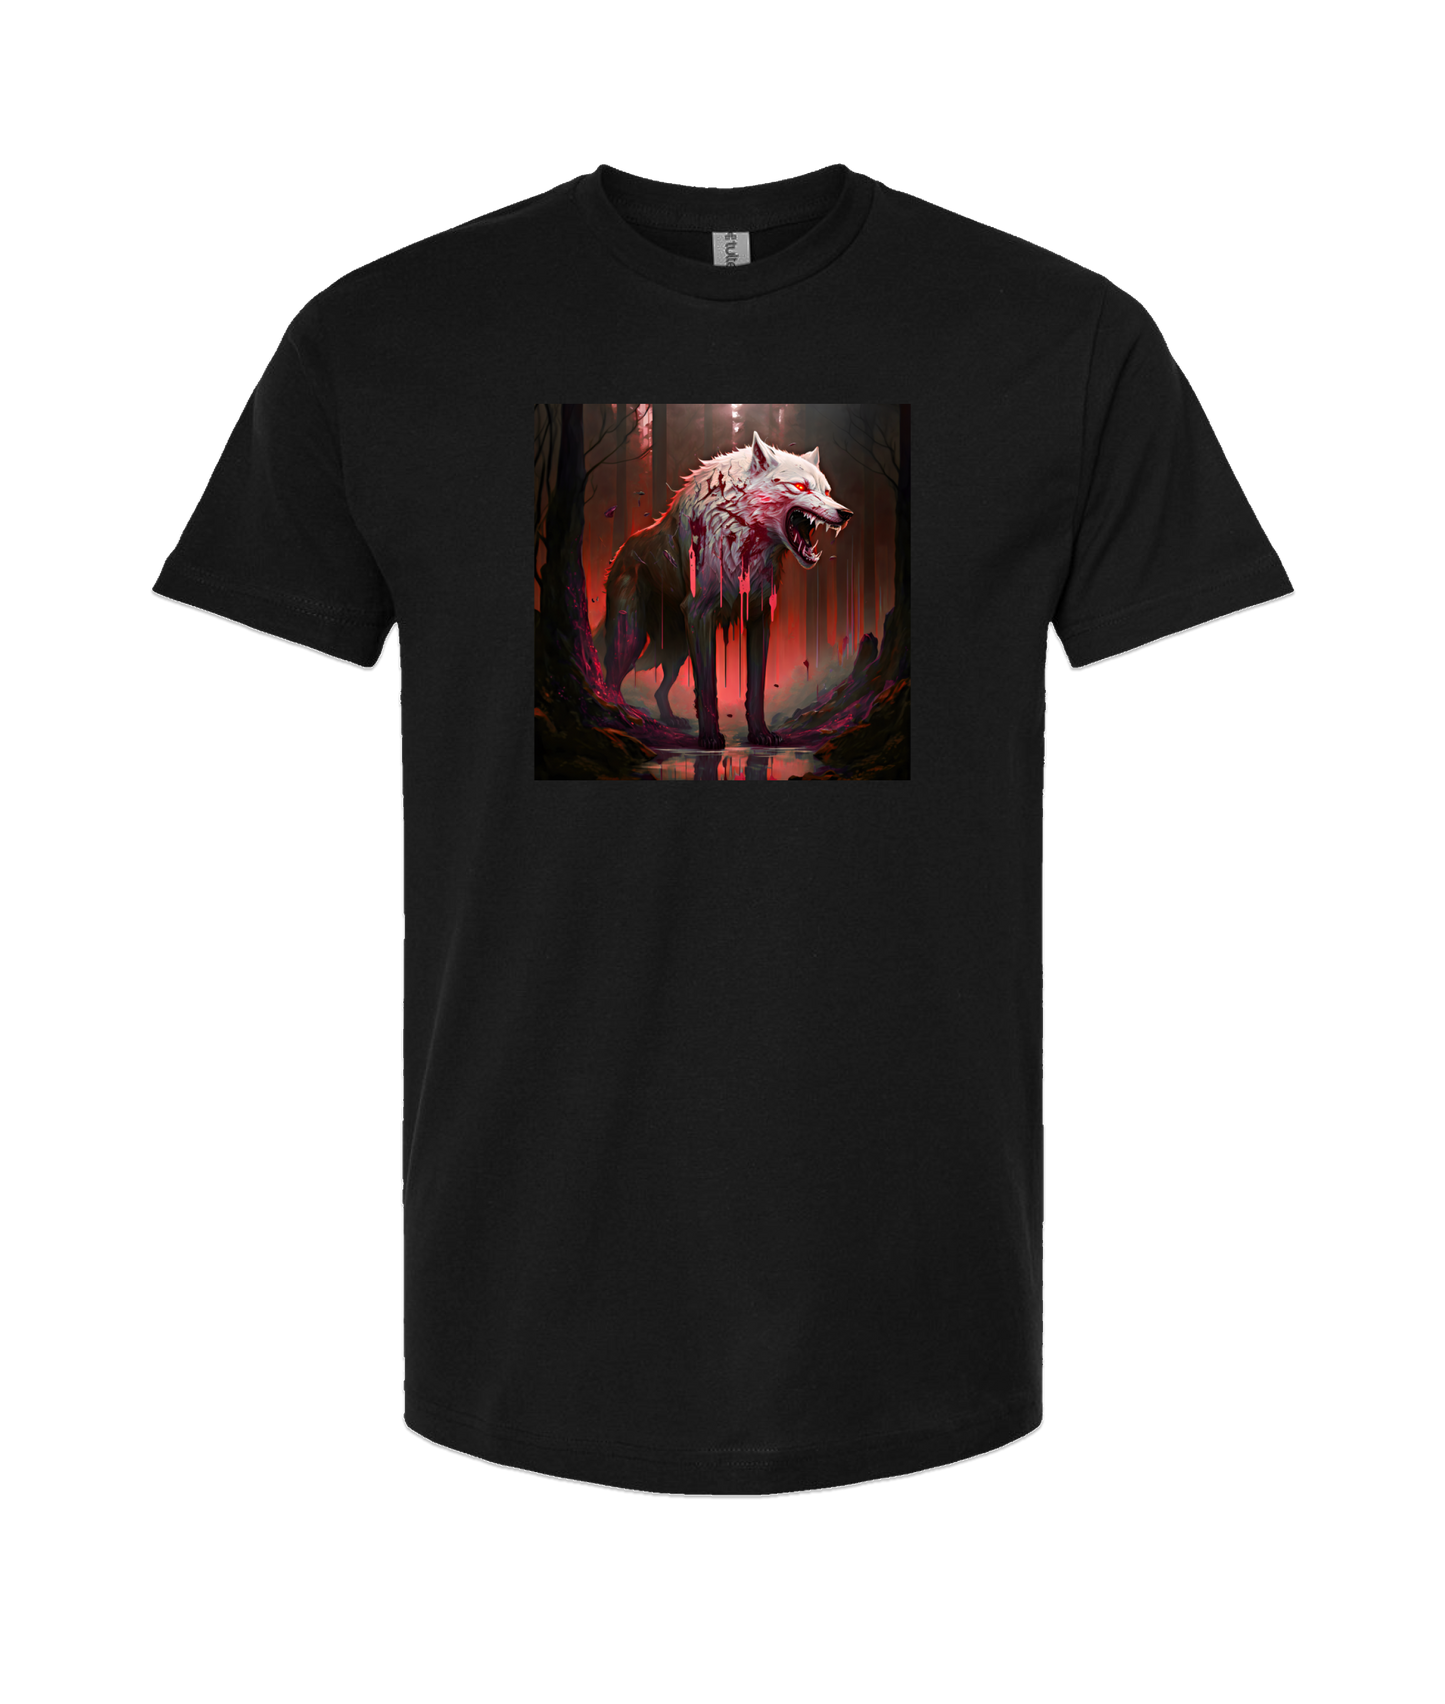 Doomed User - Wolf Woods - Black T-Shirt